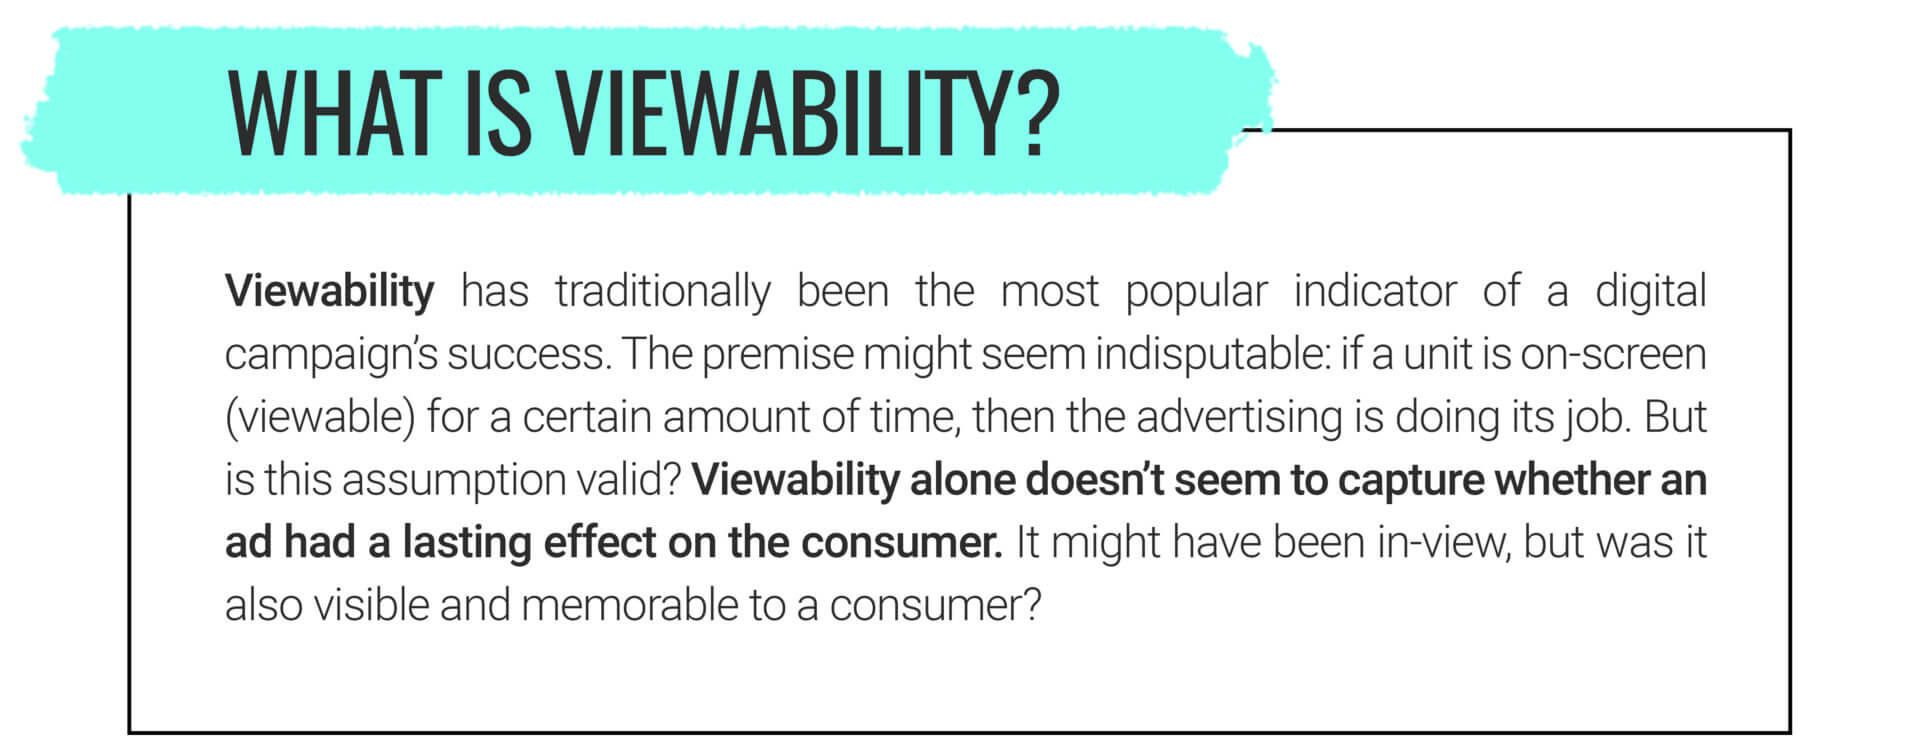 Viewability